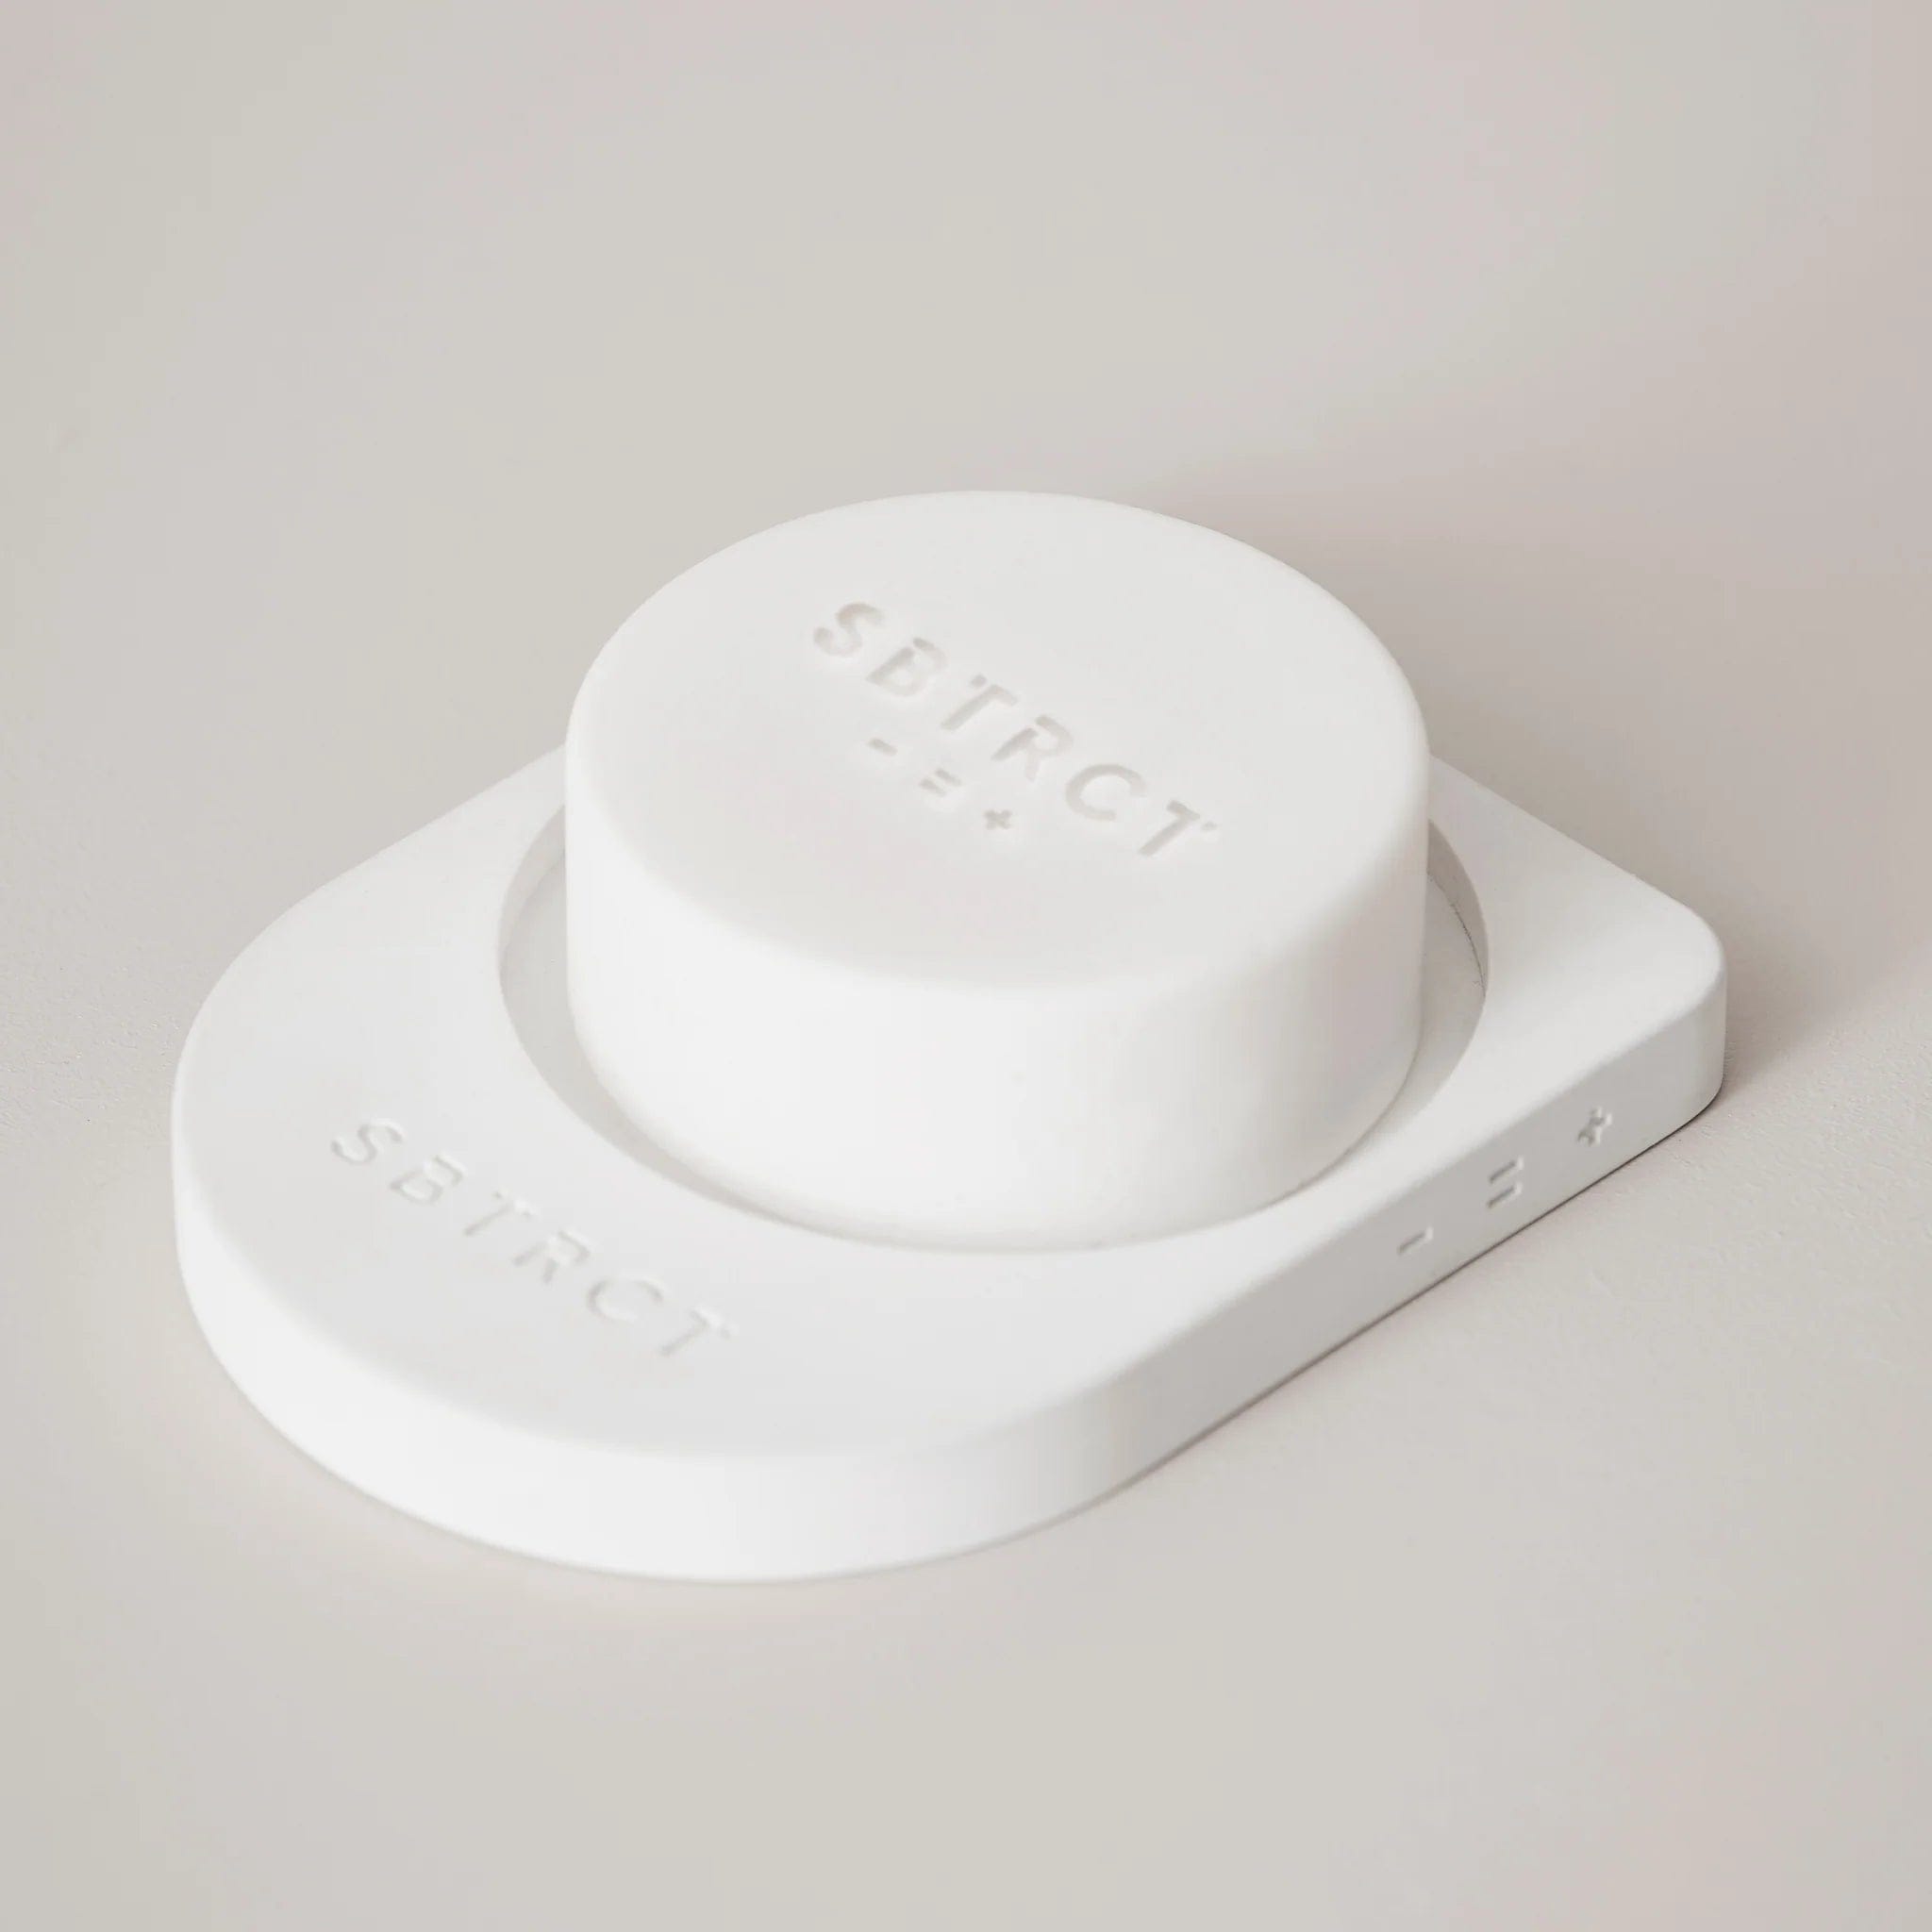 SBTRCT Skincare Fragrance Free Gentle Foaming Cleanser Starter Kit